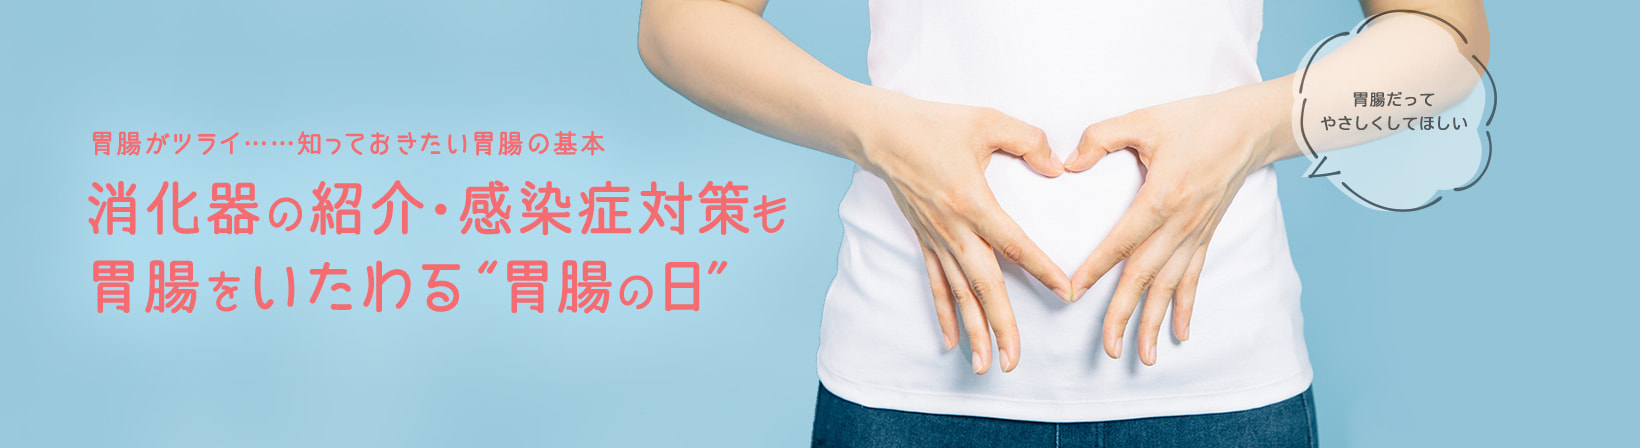 胃腸がツライ……知っておきたい胃腸の基本